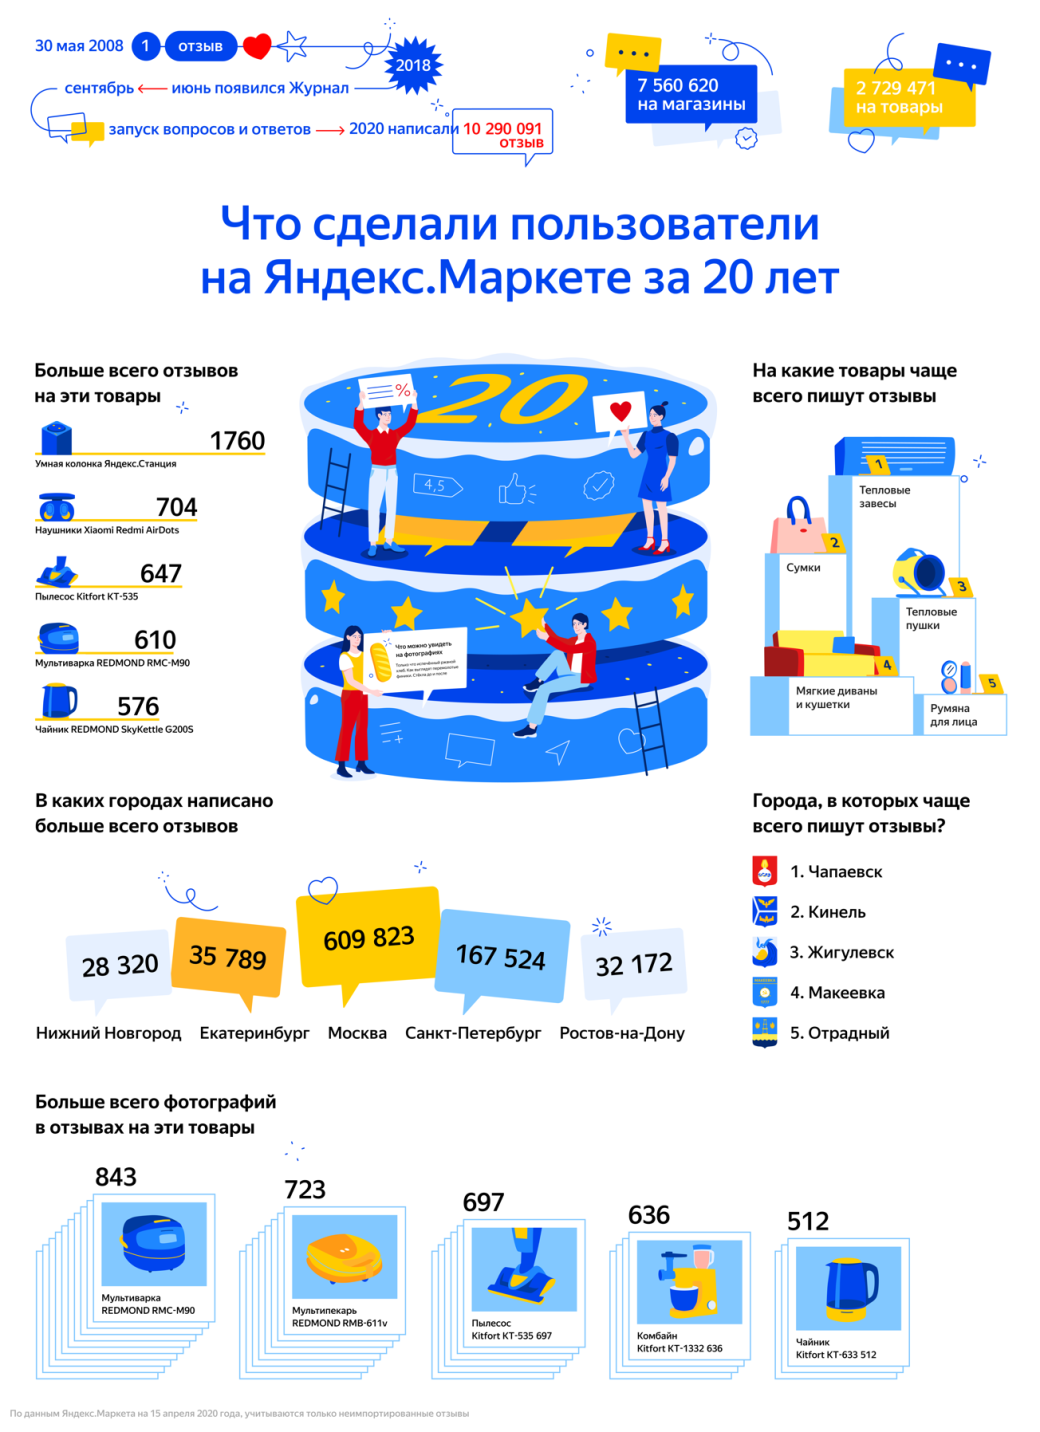 Галерея «Яндекс.Маркет» представил рейтинг товаров с самым большим количеством отзывов за 20 лет - 1 фото